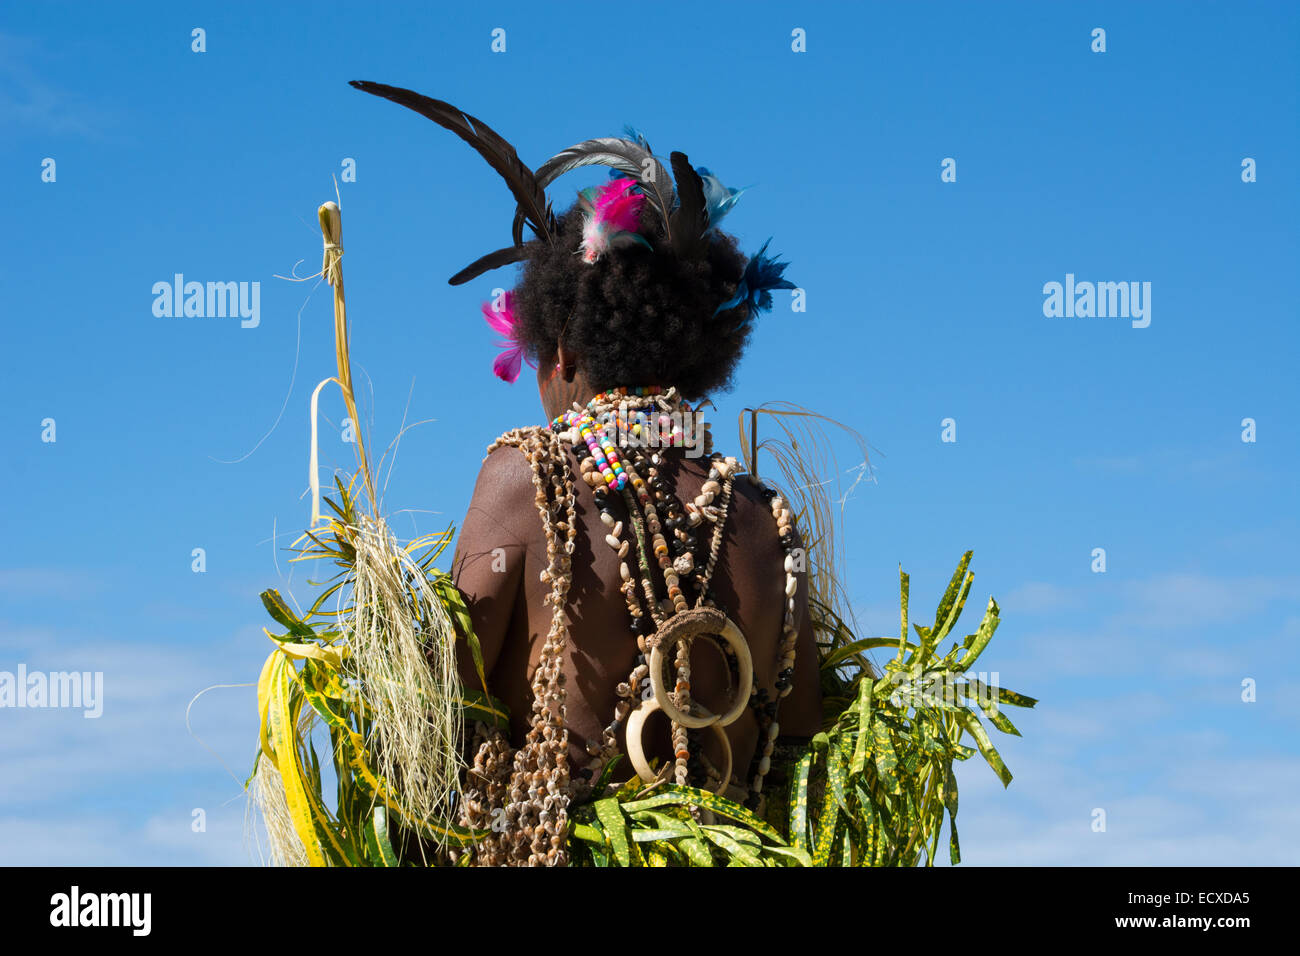 La Melanesia, Papua Nuova Guinea, Tufi. Tradizionale benvenuto sing-sing danza con donna vestita di uccello tropicale piume. Foto Stock